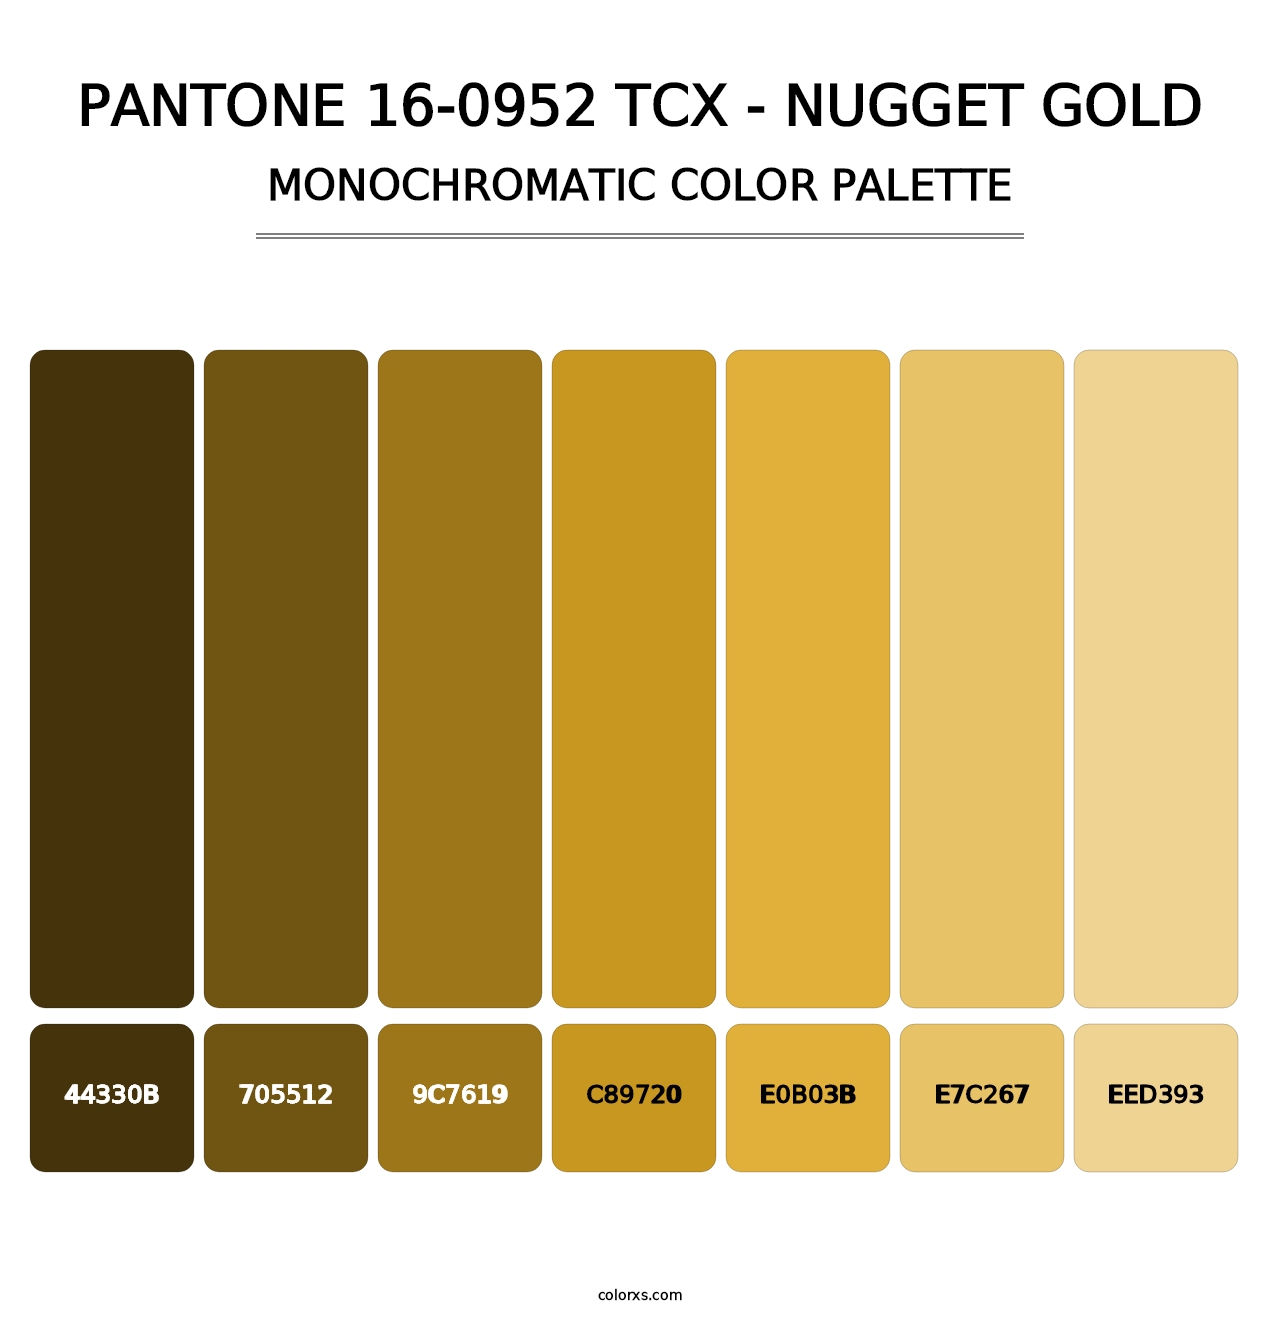 PANTONE 16-0952 TCX - Nugget Gold - Monochromatic Color Palette